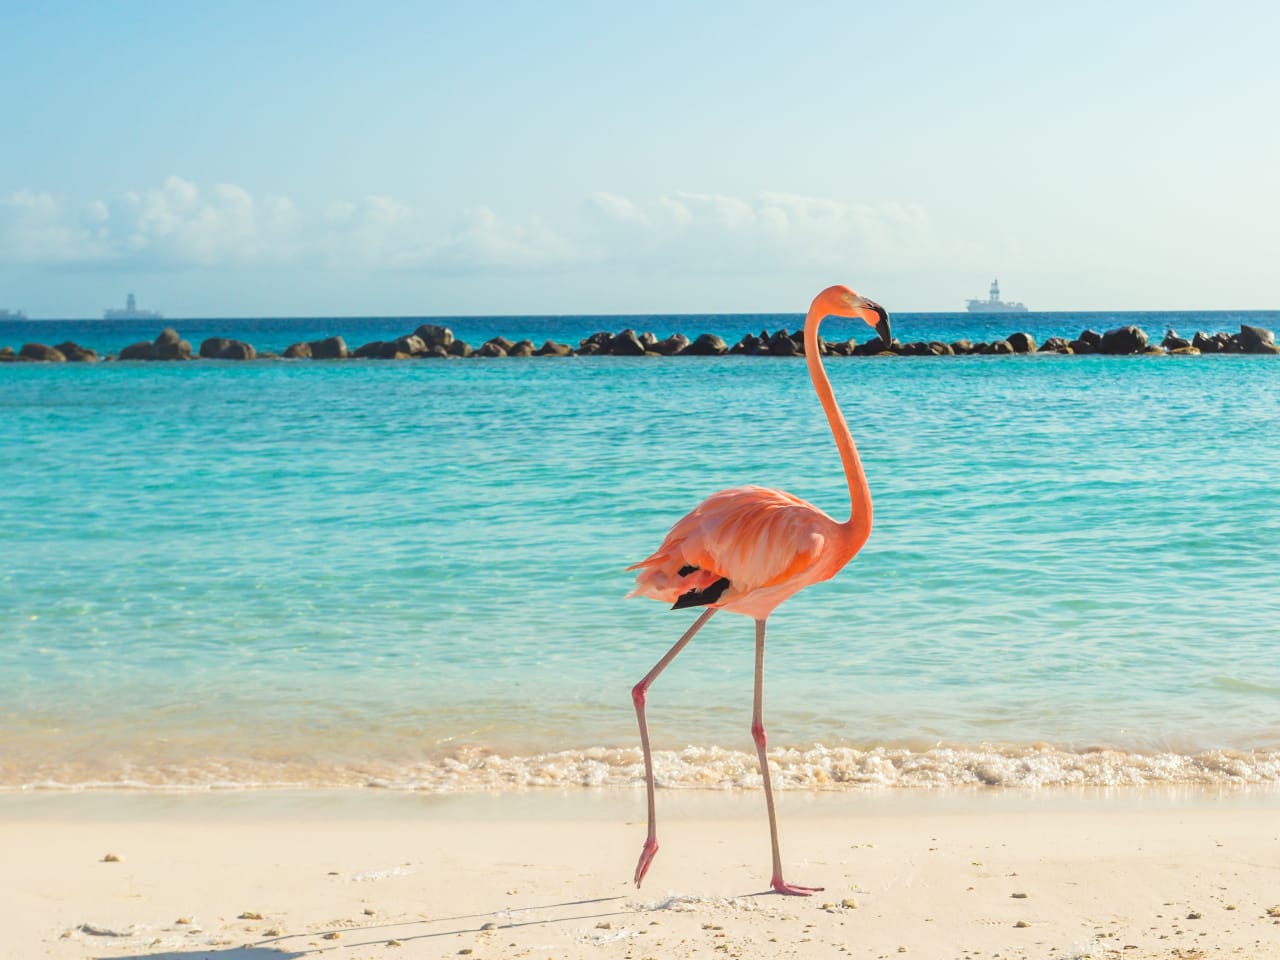 Strandidyll mit exotischem Vogel – ein Flamingo unterwegs am Beach von Renaissance Island, Aruba © PhotoSerg - stock.adobe.com